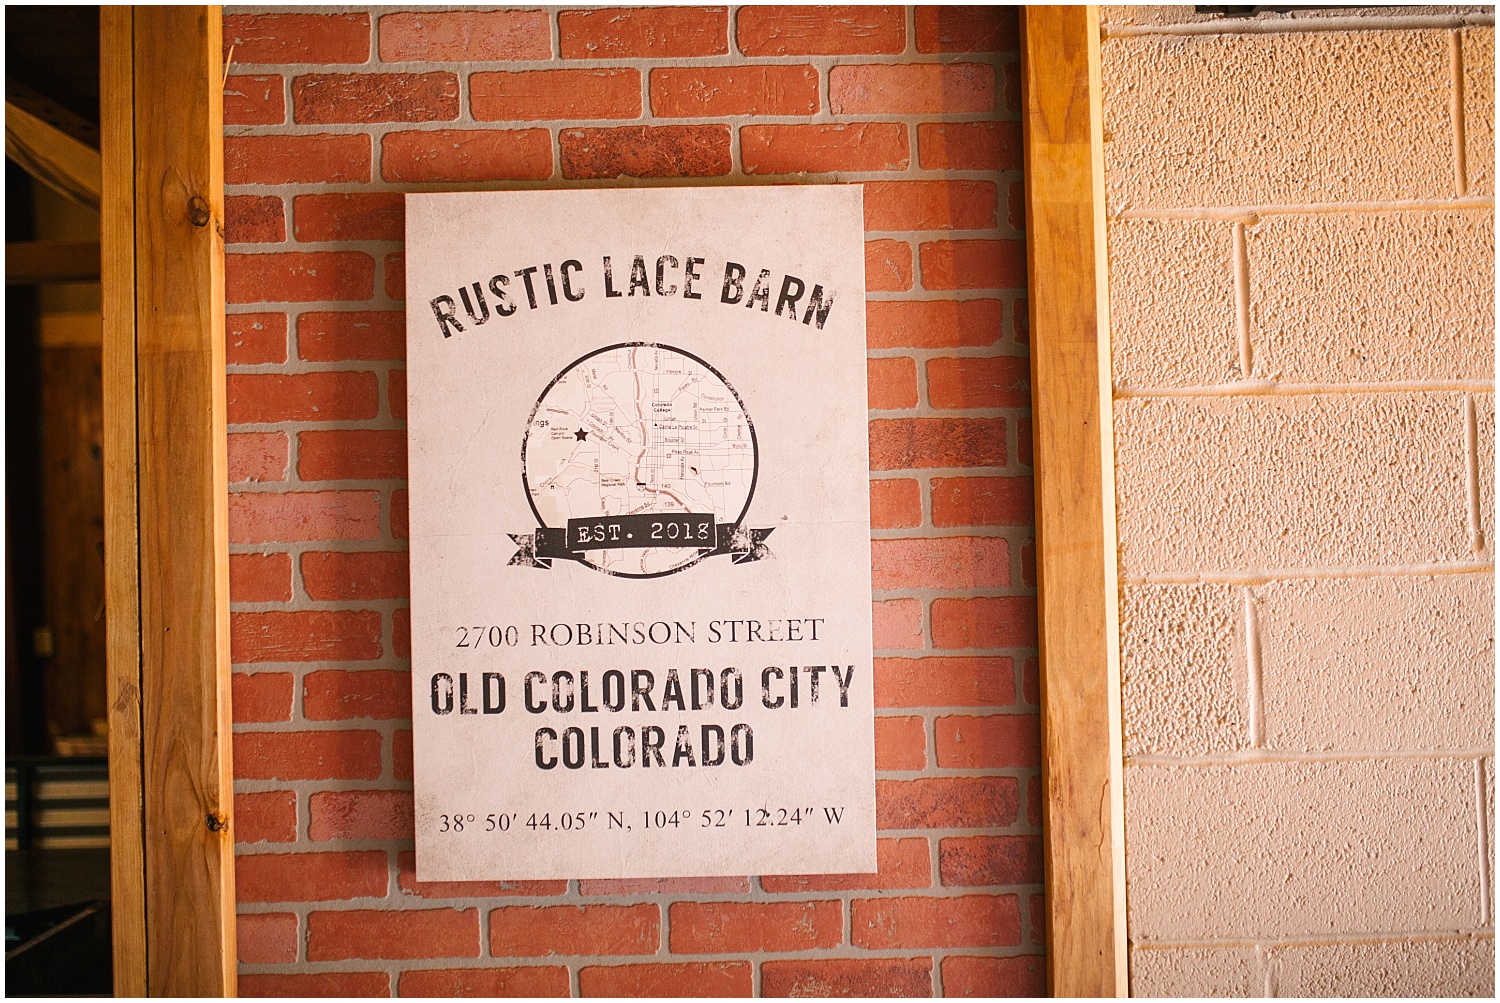 Rustic Lace Barn wedding venue sign in Old Colorado City Colorado Springs